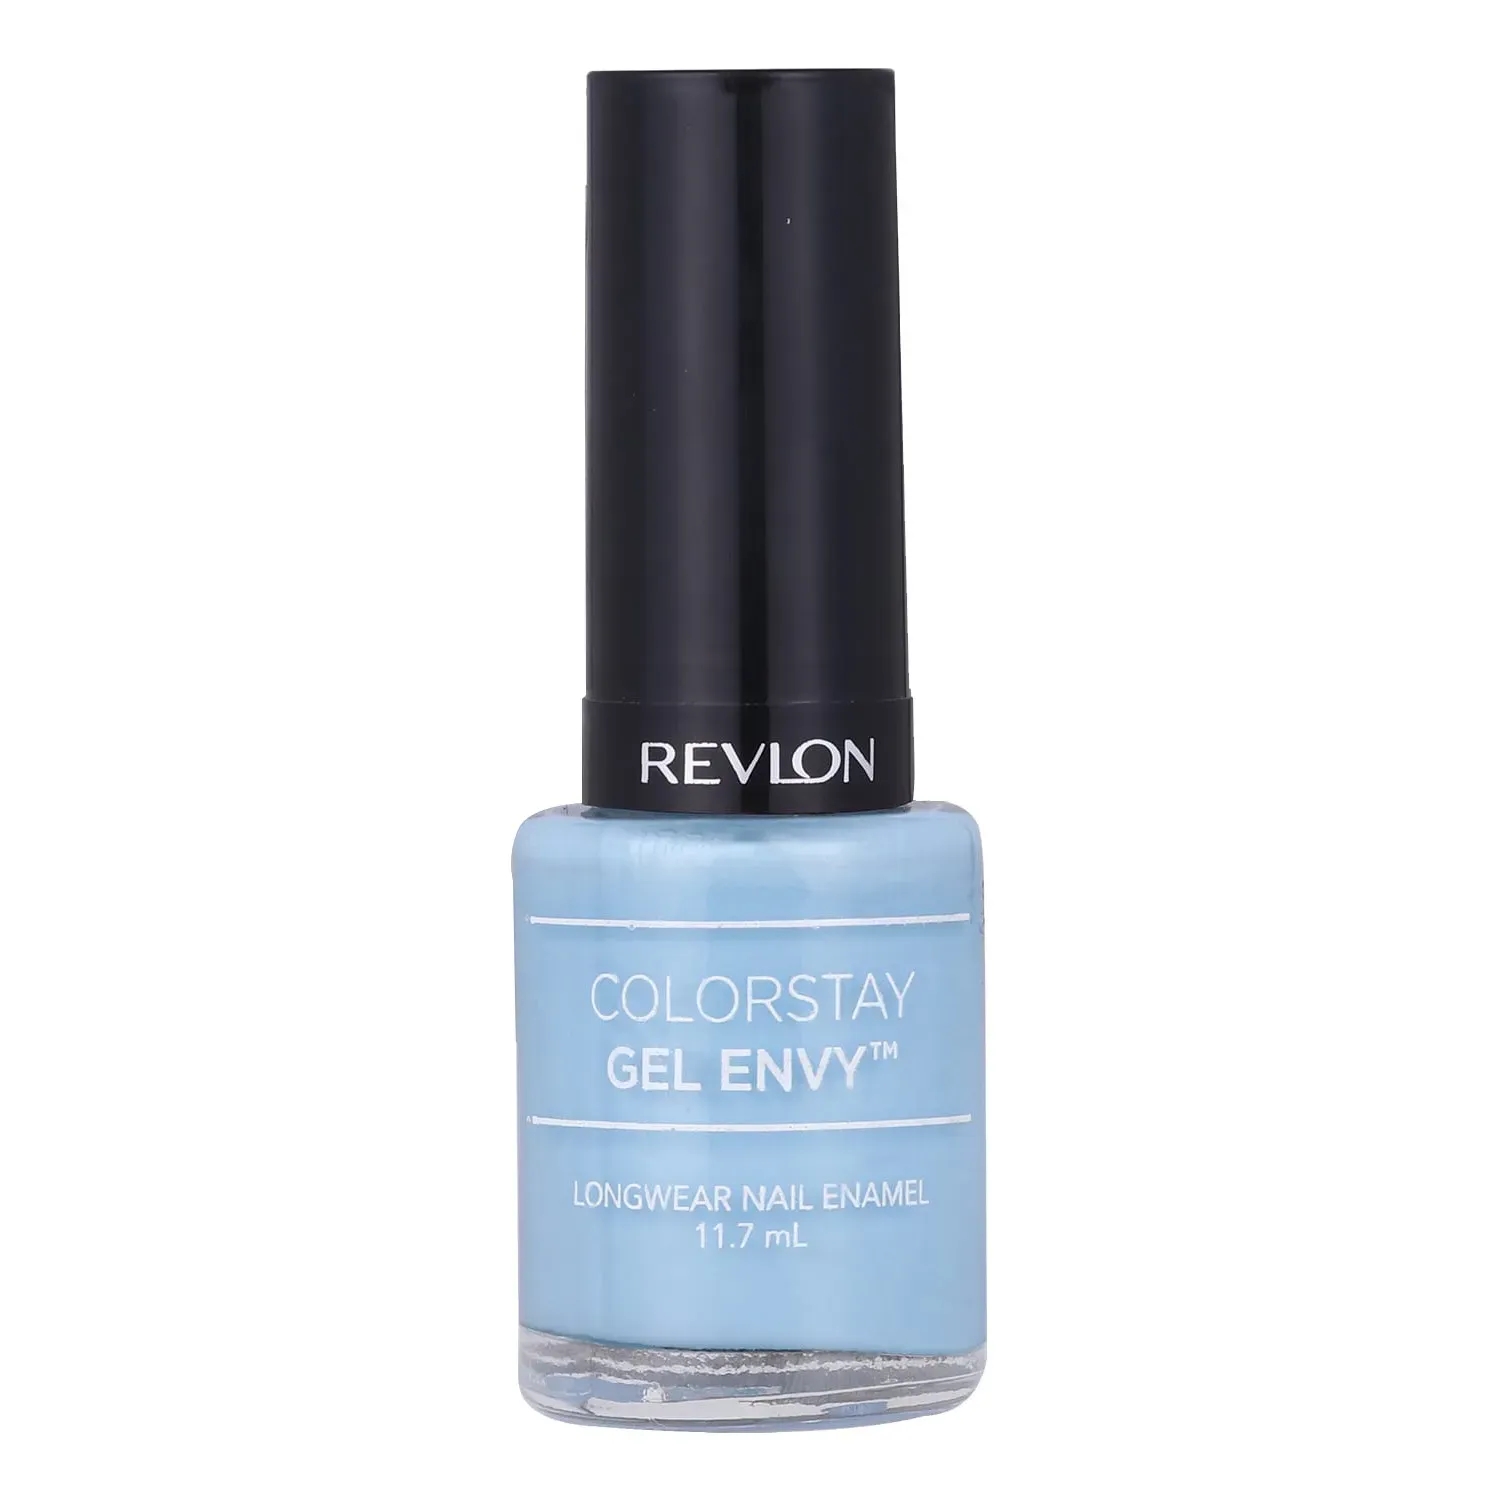 Revlon Colorstay Gel Envy Long Wear Nail Enamel - Lovestuck (11.6ml)